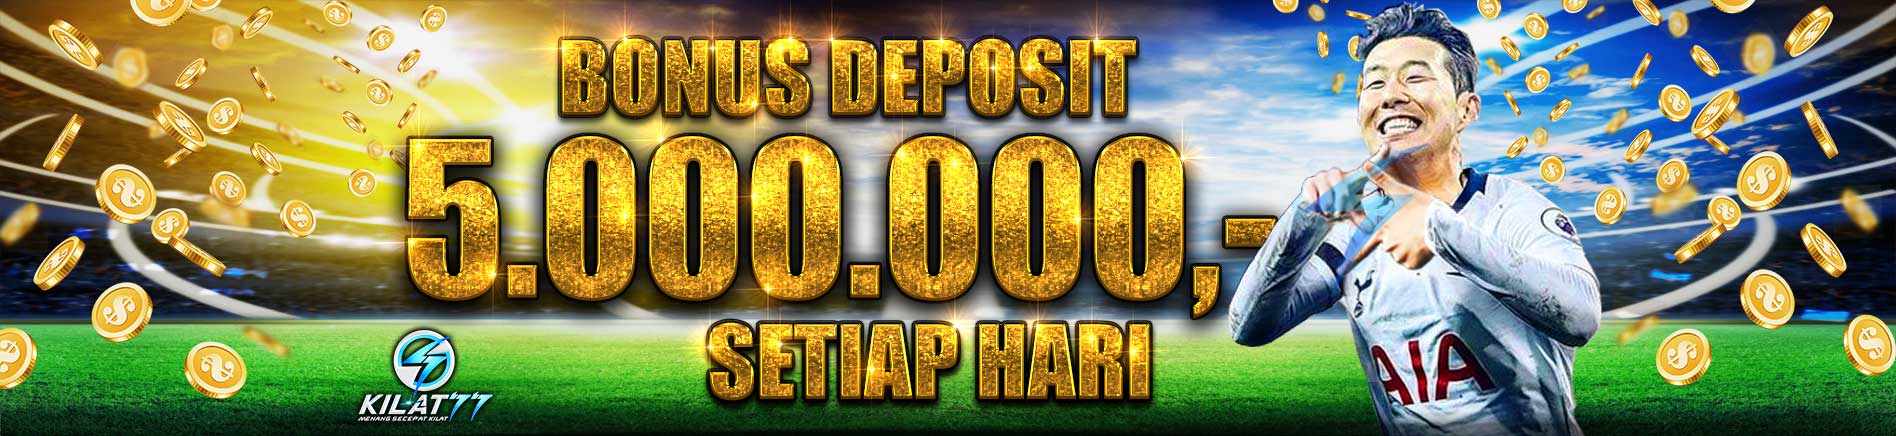 Bonus Deposit 5.000.000,- Setiap Hari